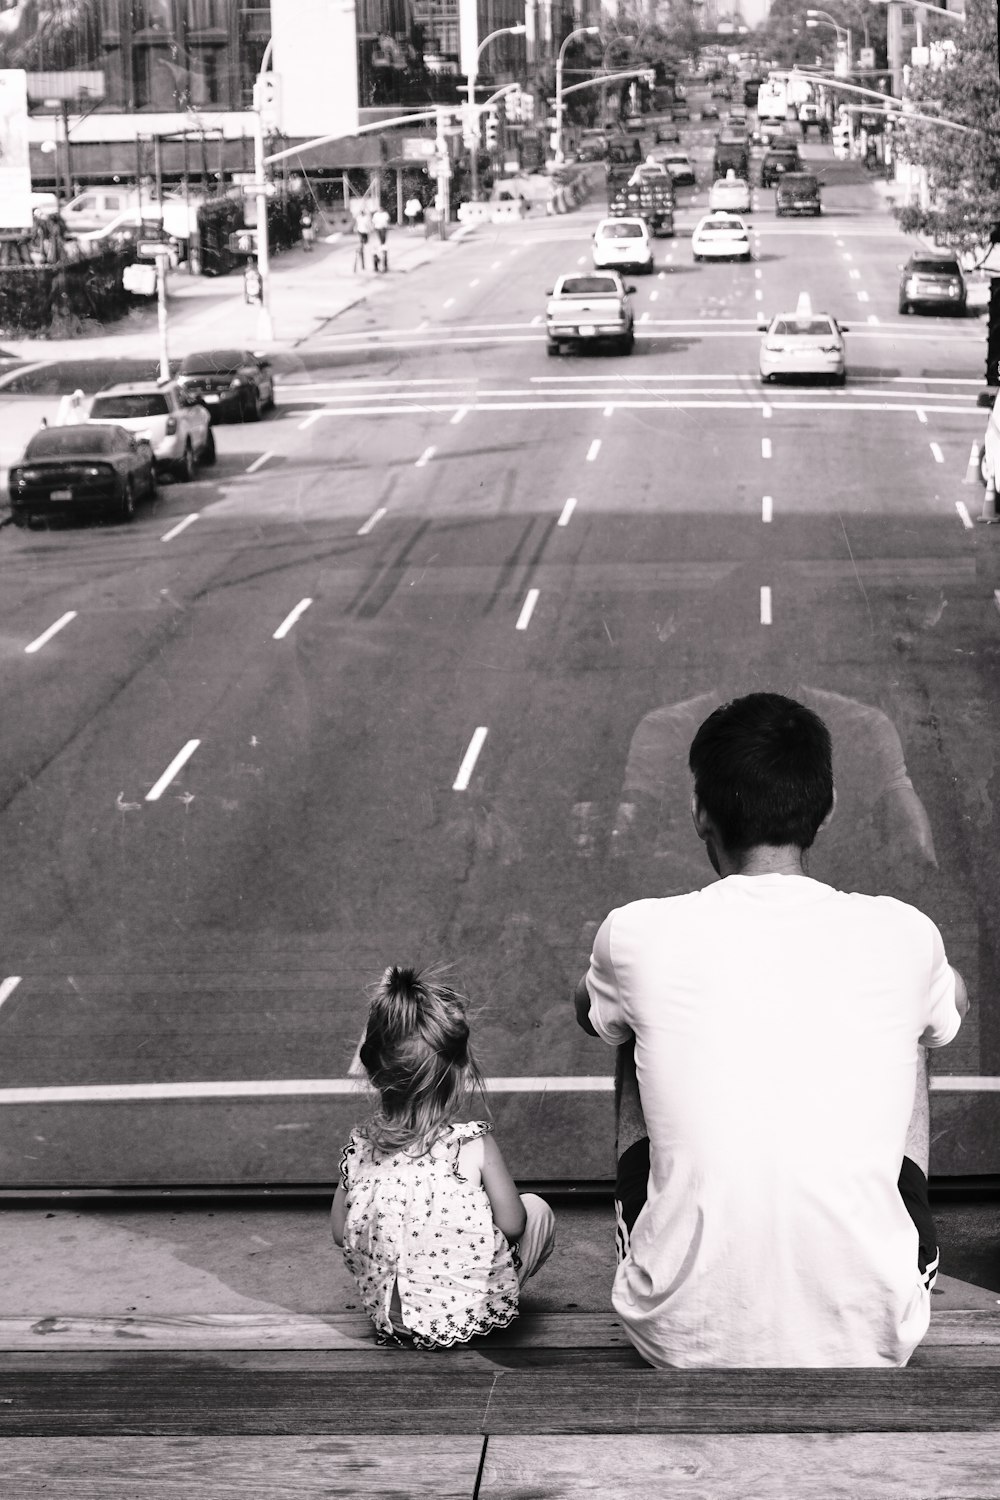 fotografia in scala di grigi di uomo e ragazza seduti sulla scala che fronteggia la strada con le auto di passaggio